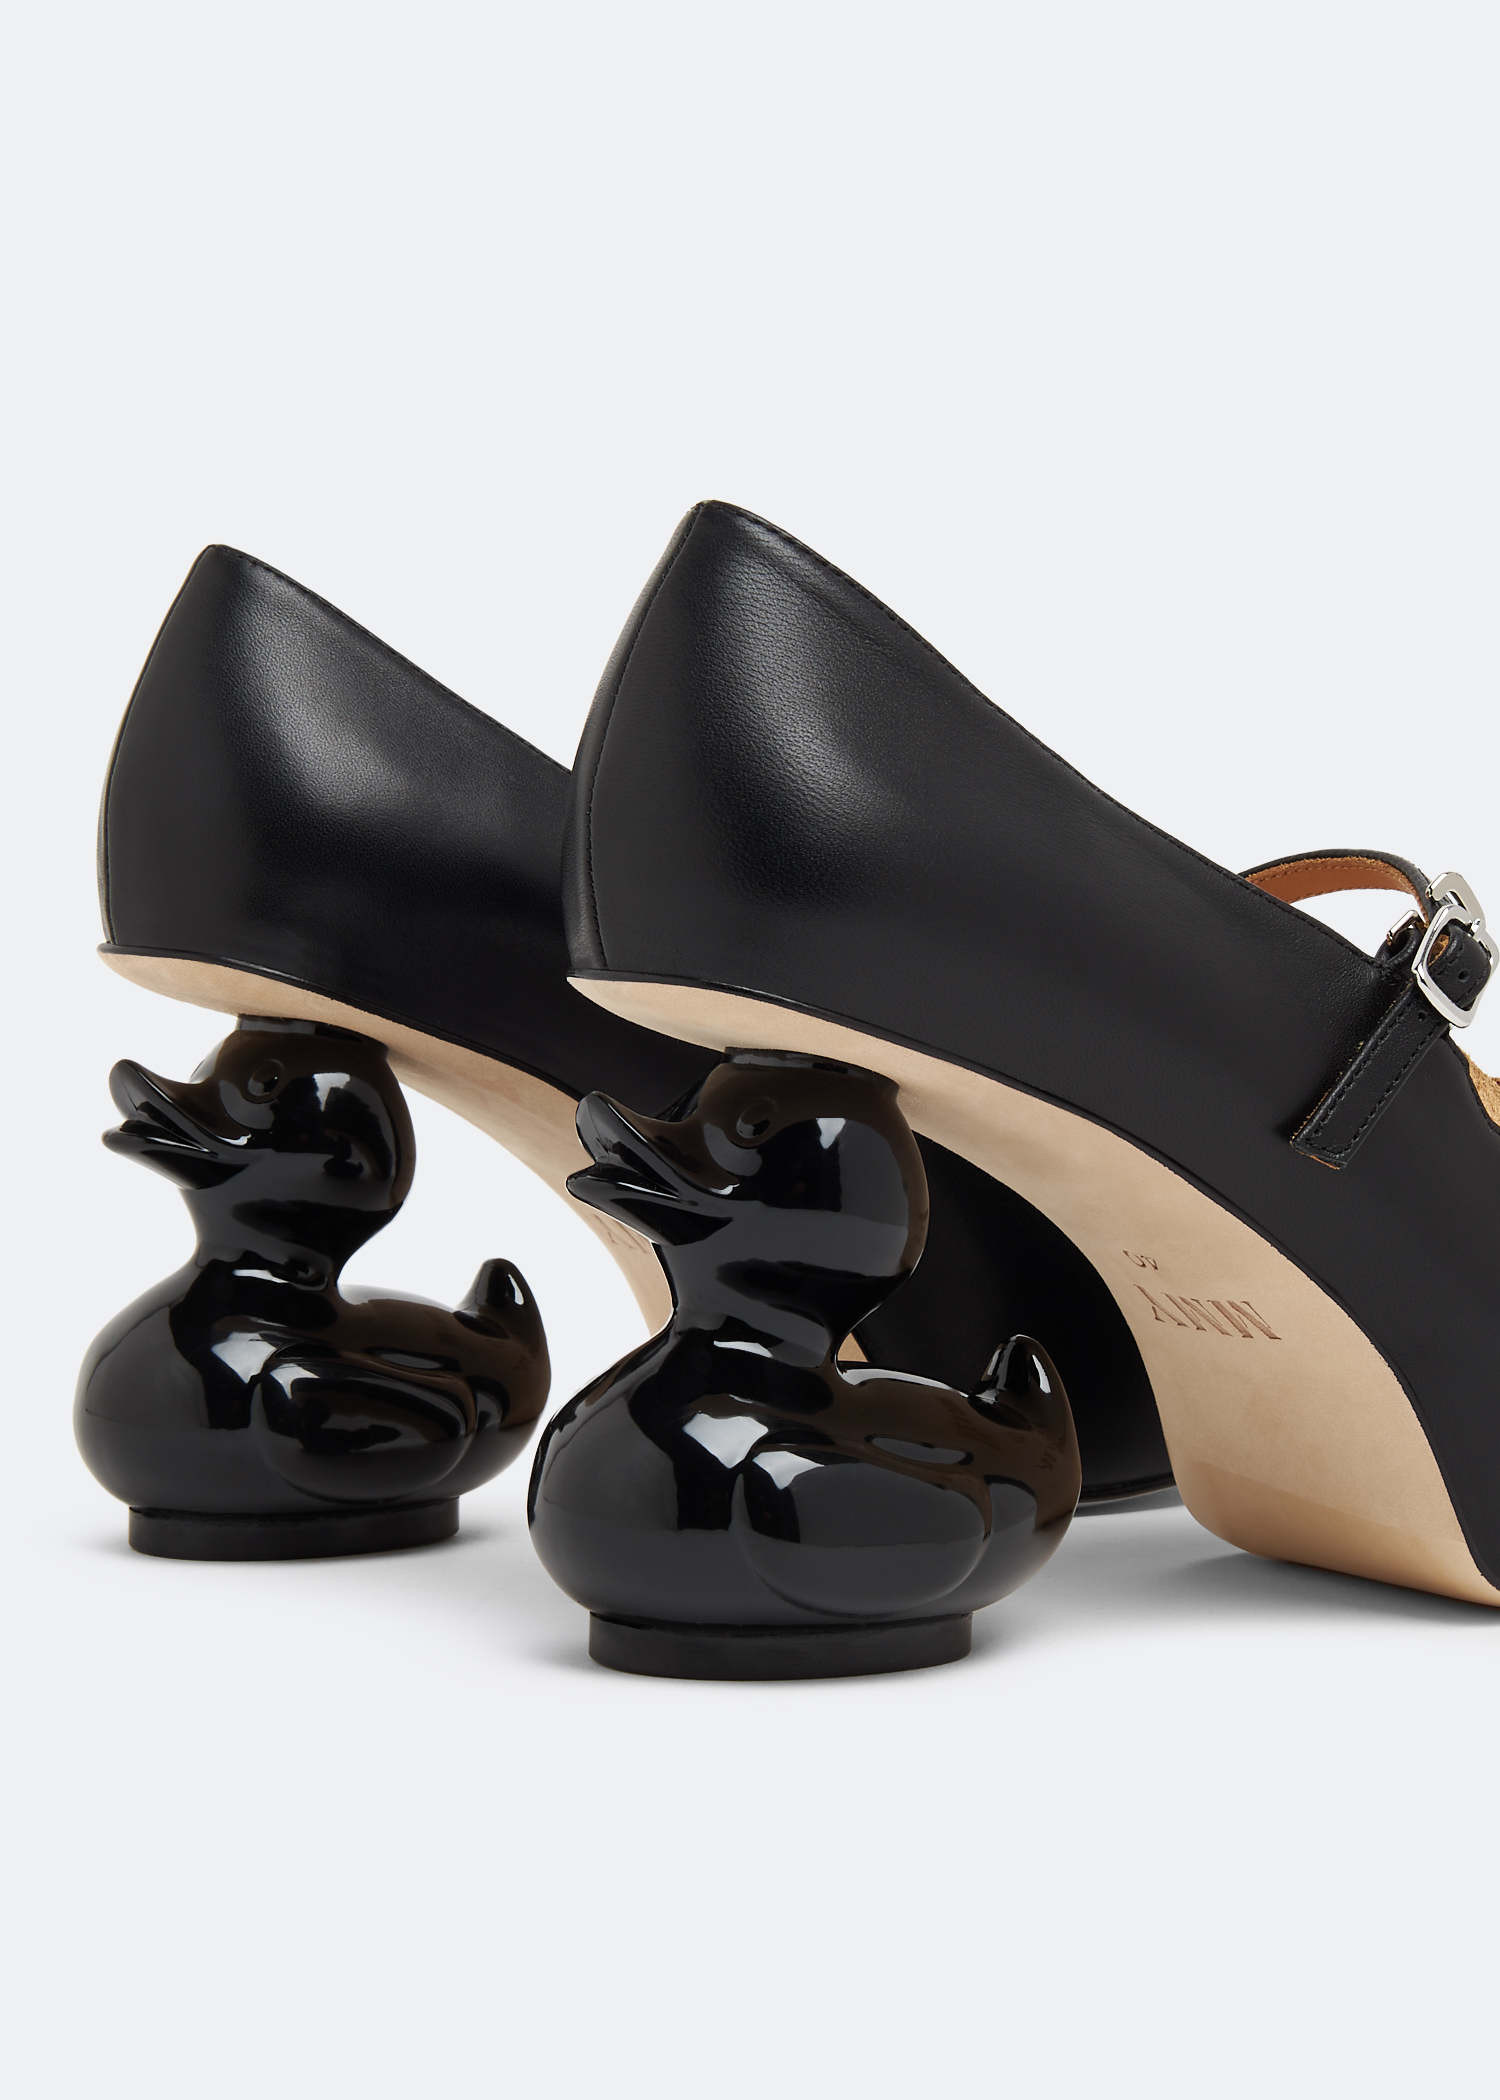 Maison Mihara Yasuhiro Duck heel pumps for Women - Black in UAE